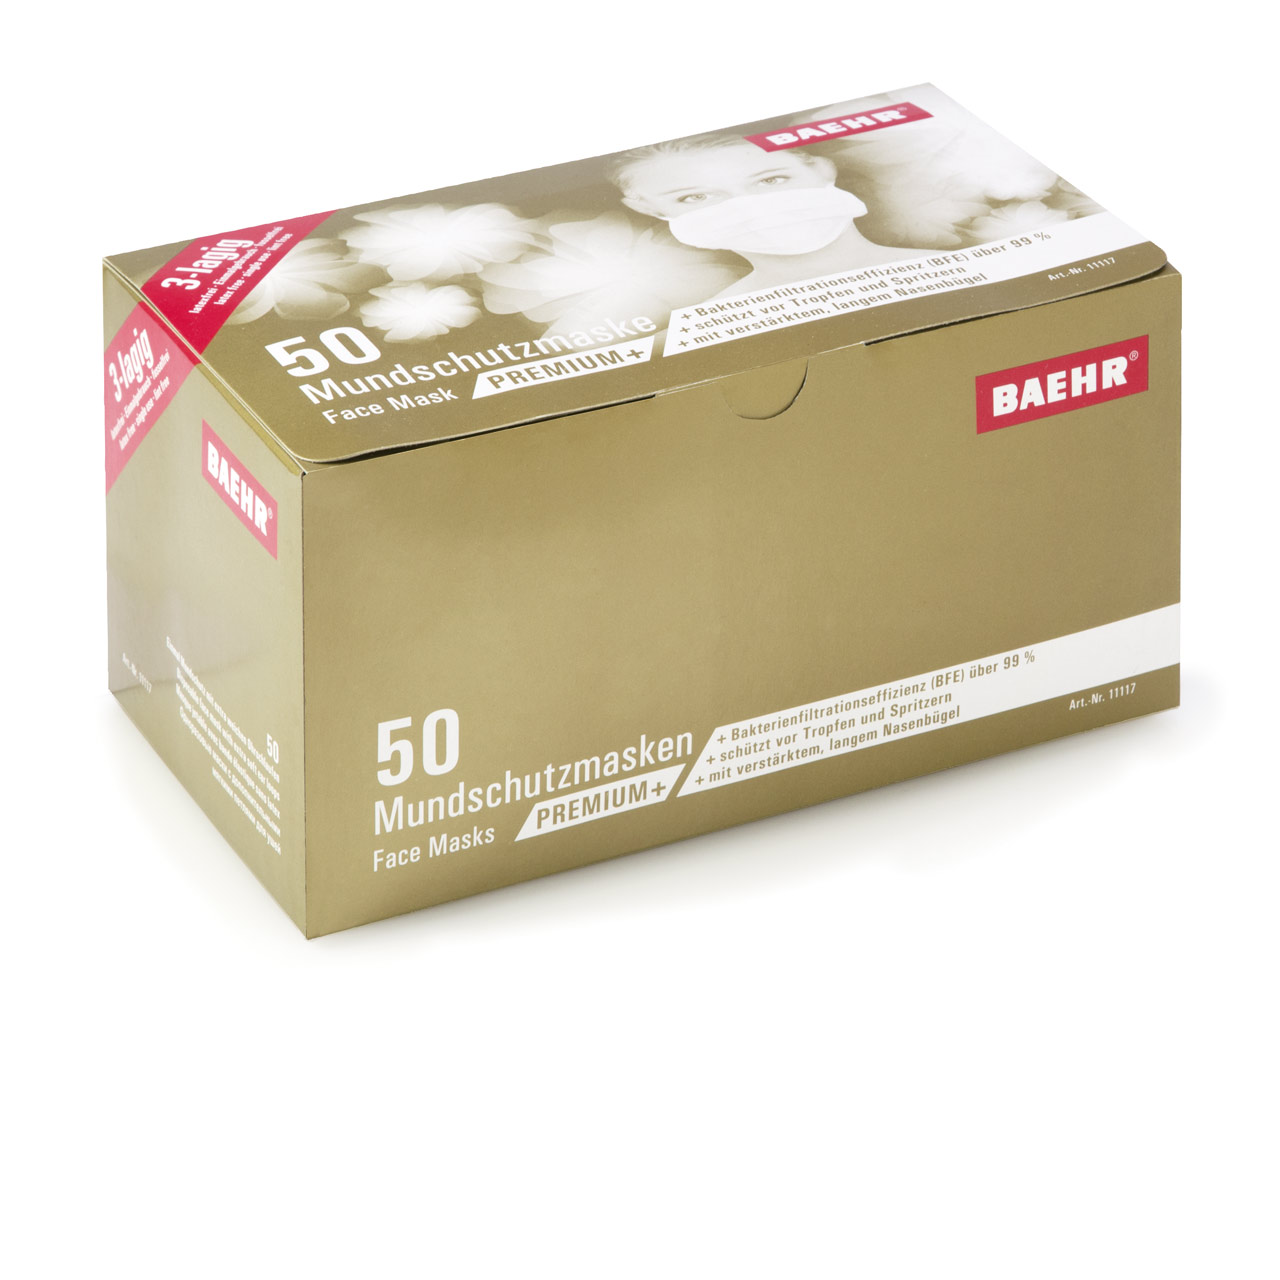 BAEHR Mundschutzmaske PREMIUM+ 1 Pack (50 Stück)